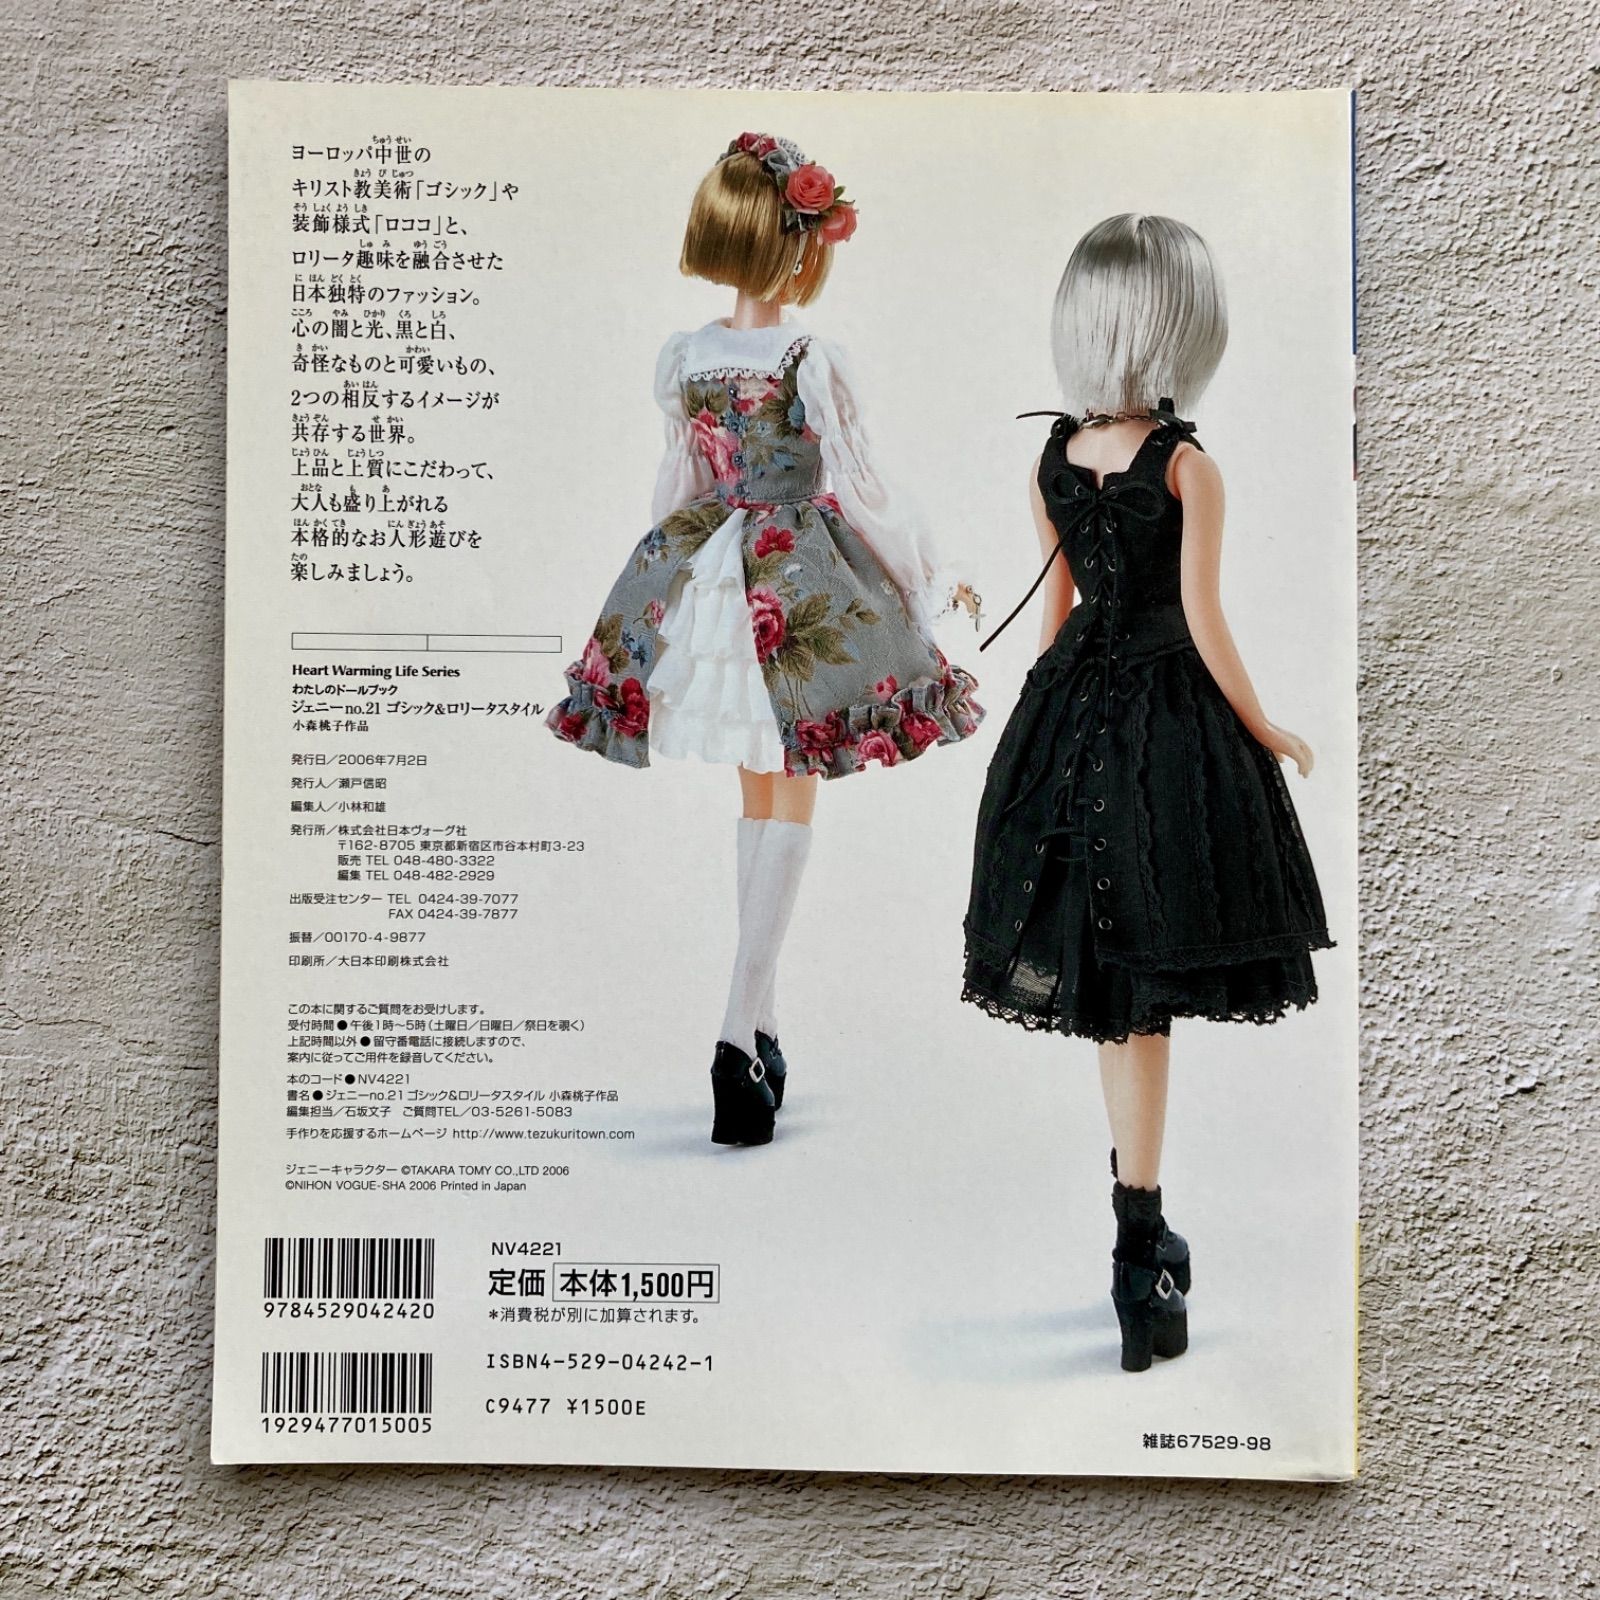 ジェニーno21 ゴシックロリータスタイル 小森桃子作品 - ファッション